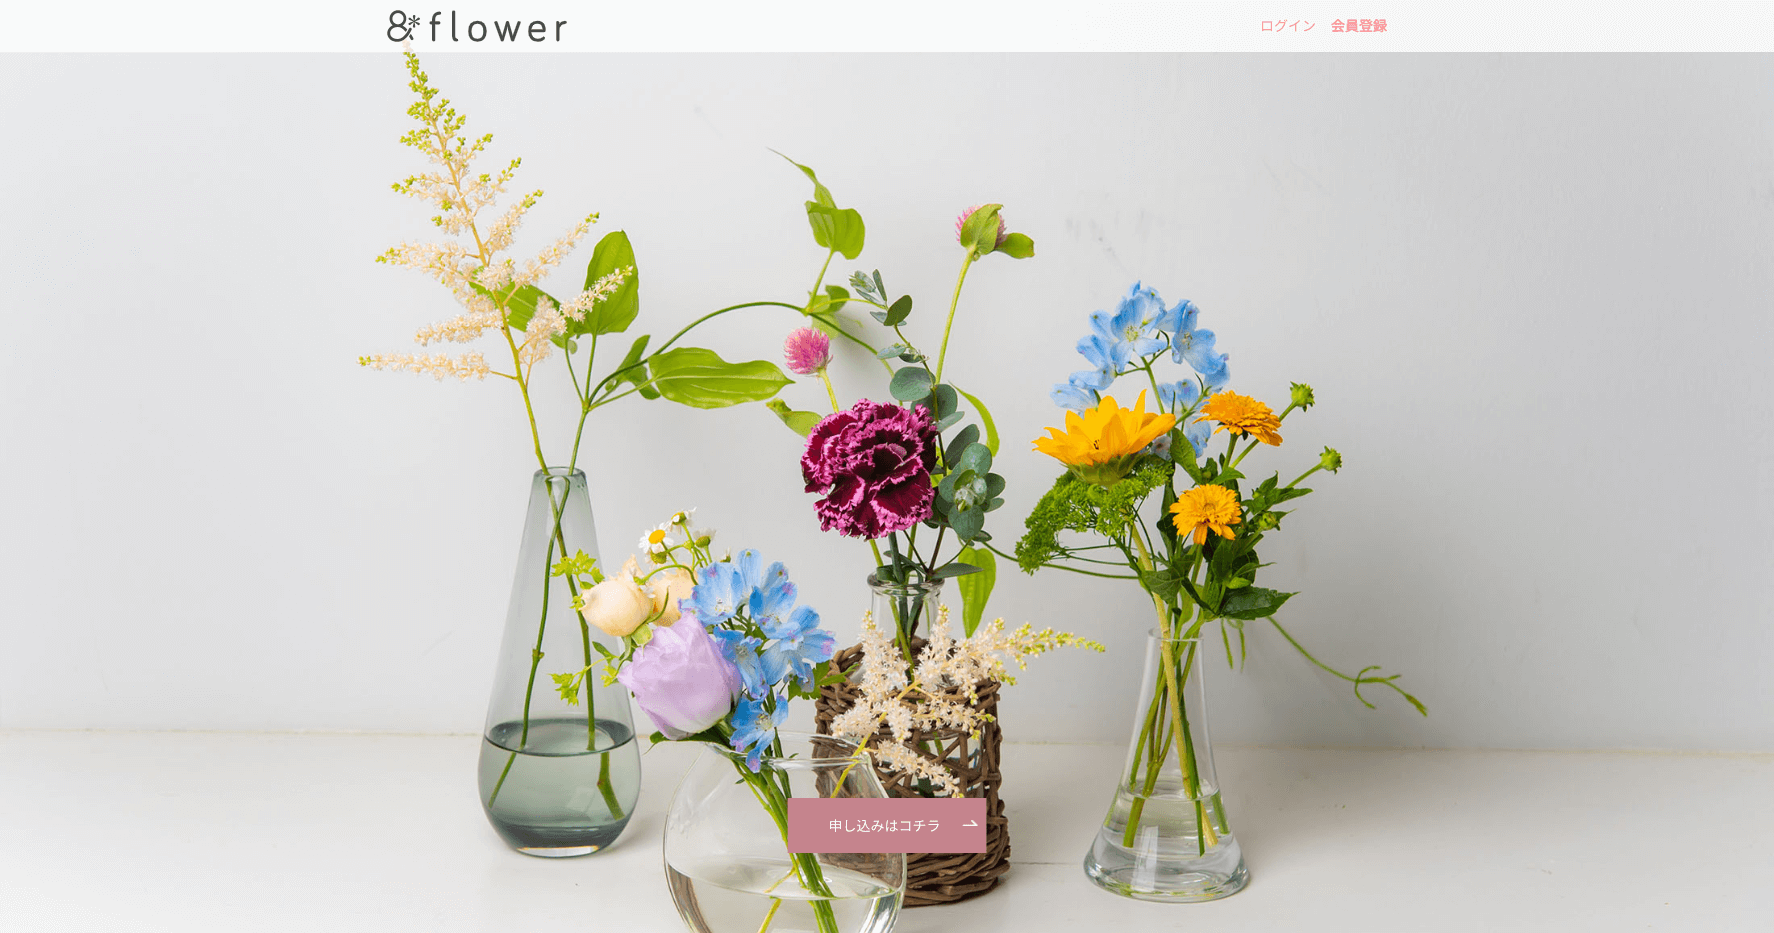 お花の定期便 Flower アンドフラワー とは 花のサブスクで季節のかわいい花を手に入れよう ハナタク 花の定期便 サブスク紹介